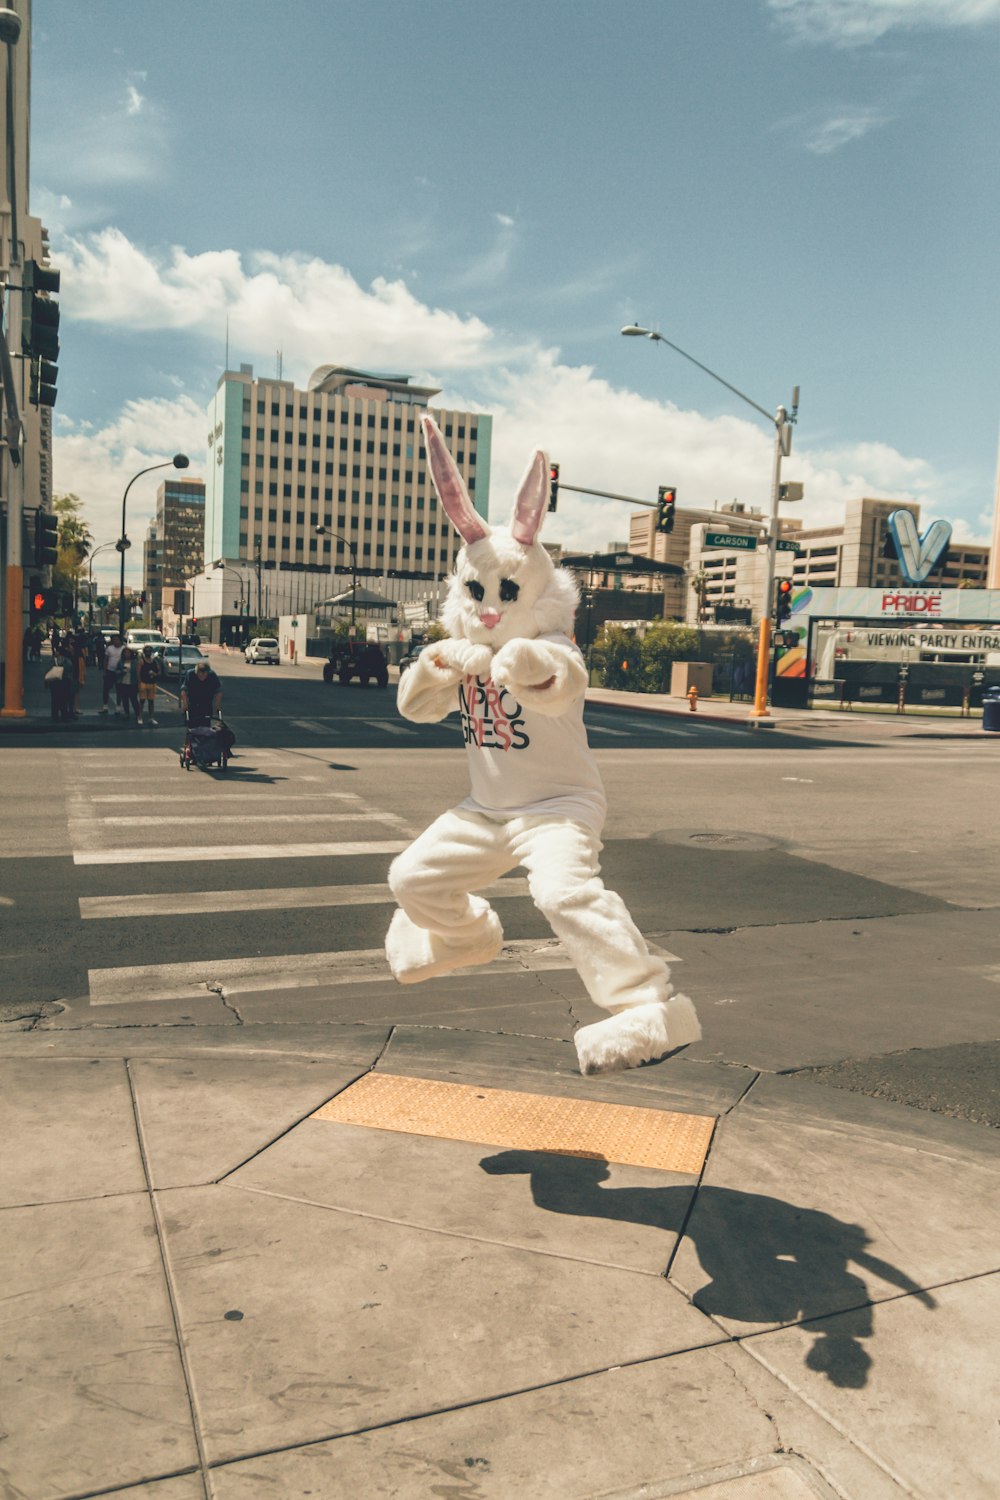 Persona en mascota de conejo saltando cerca del lado de la carretera